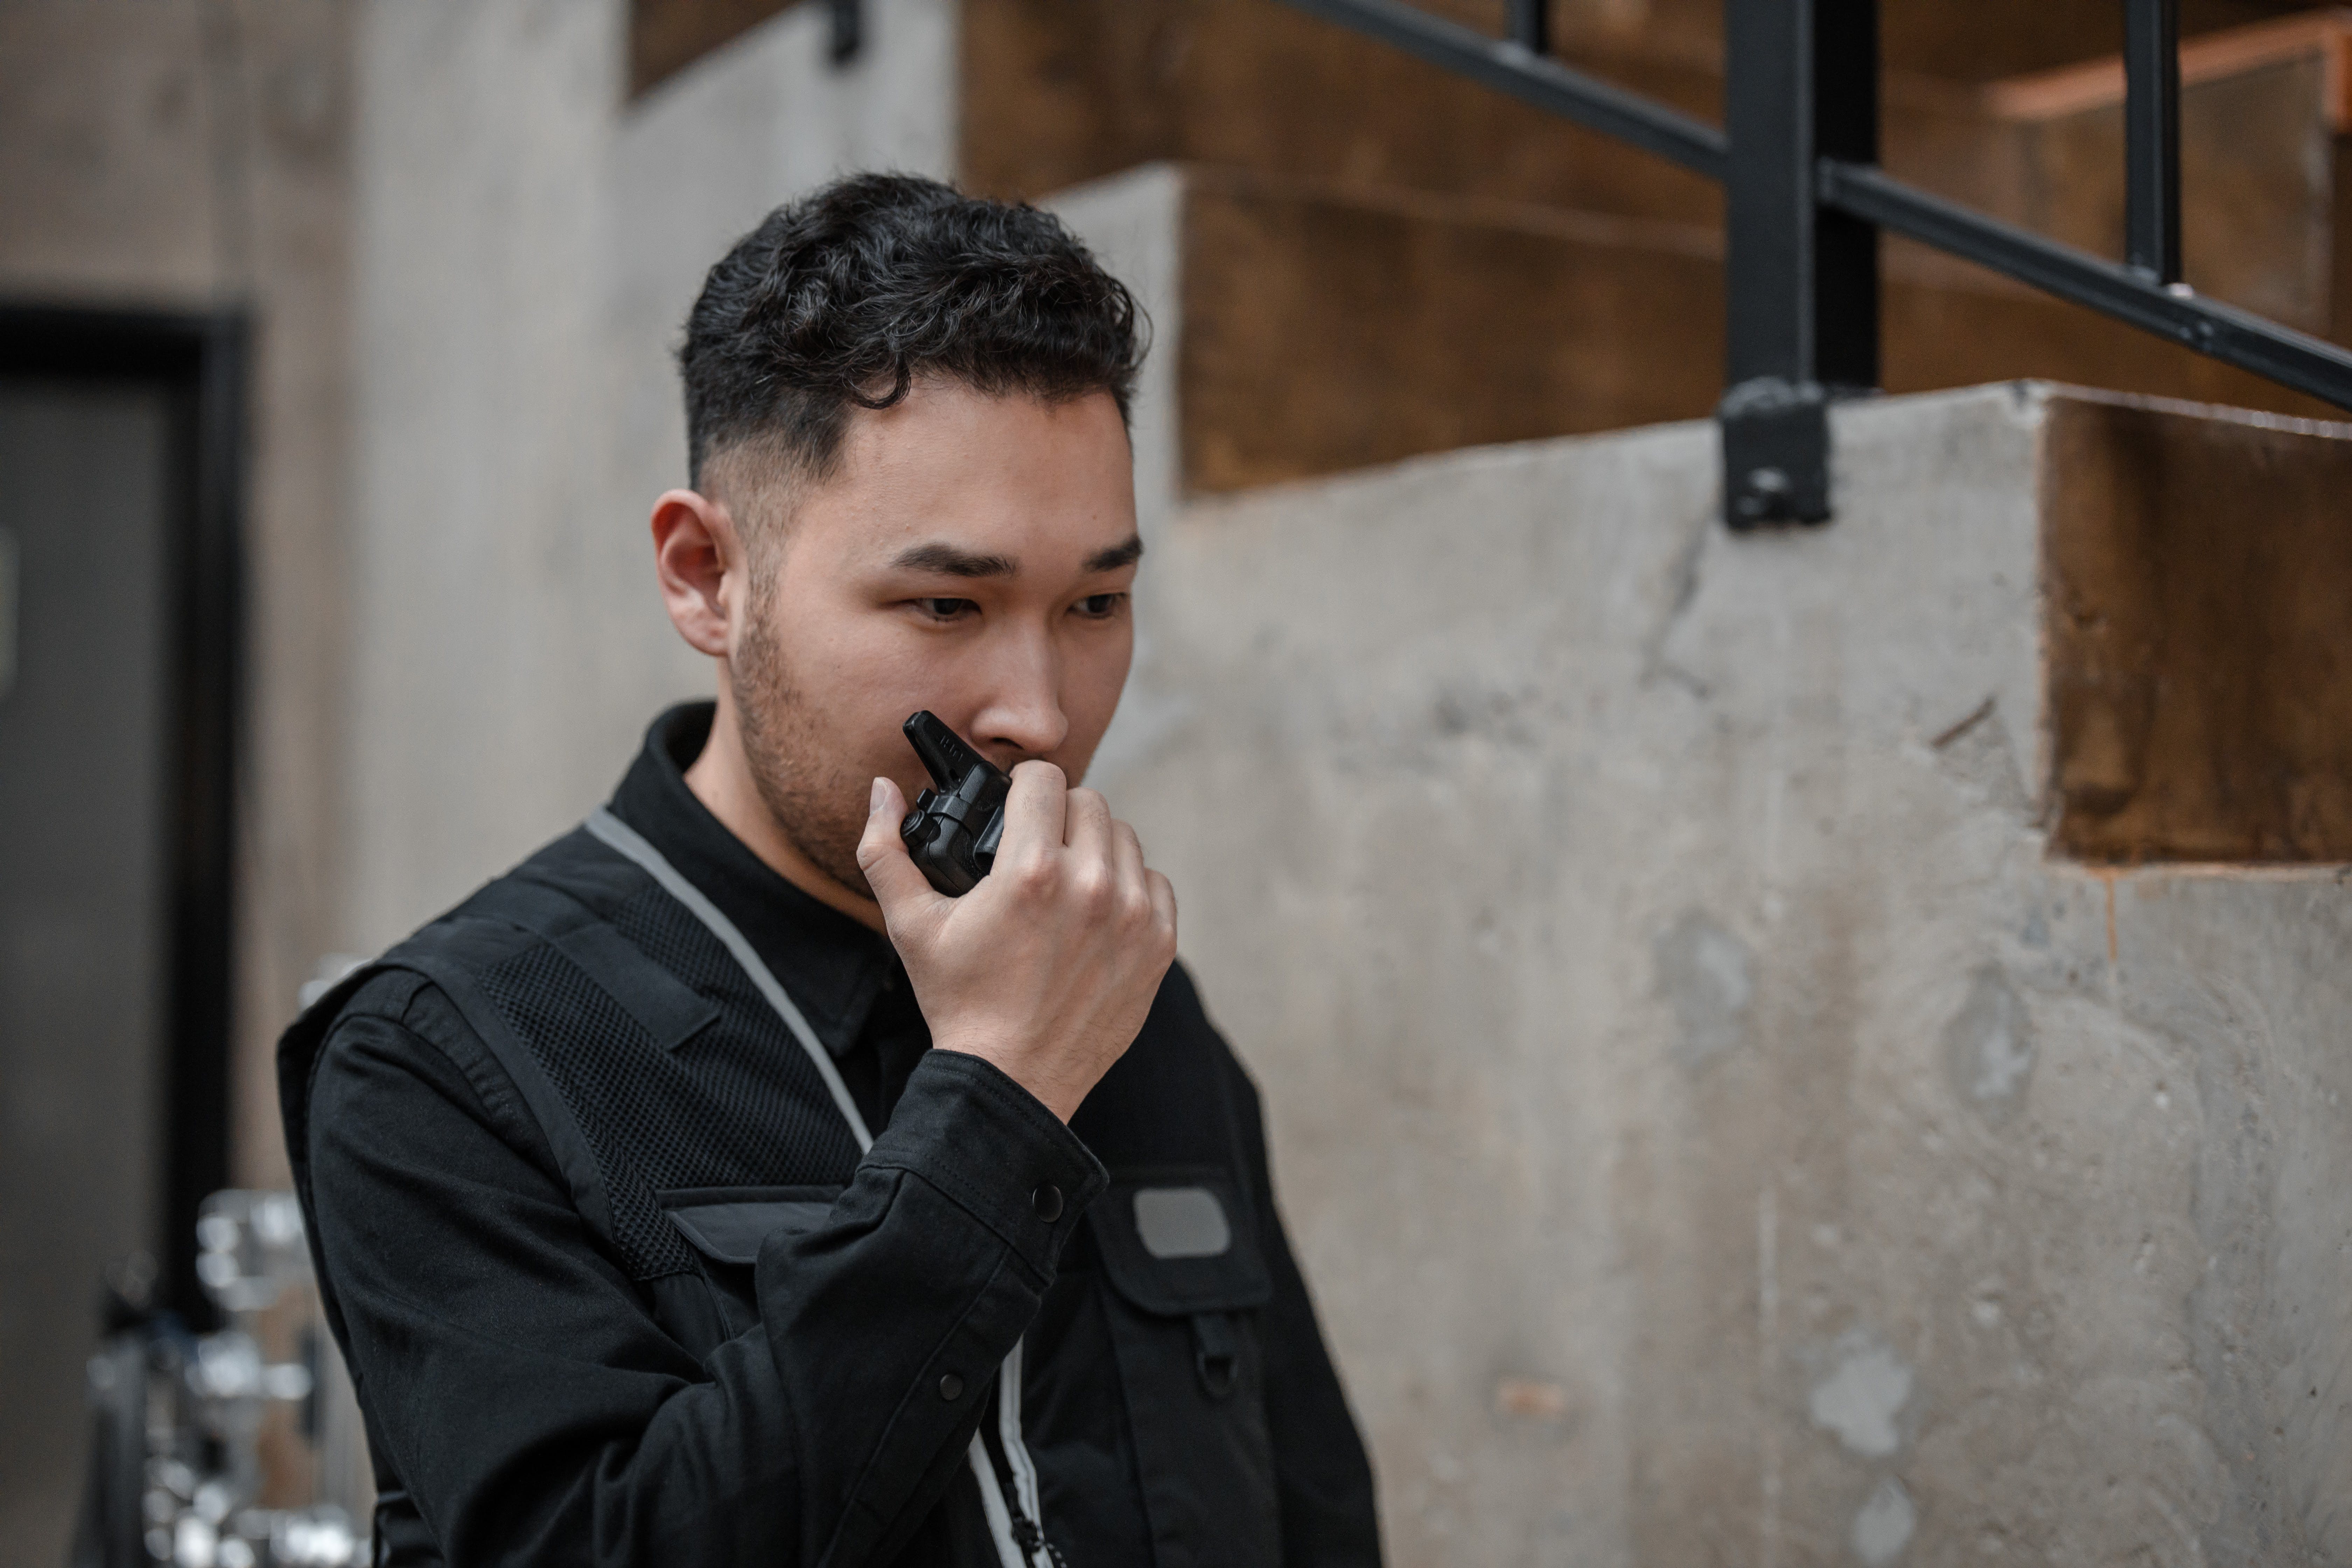 Un hombre de seguridad hablando por un walkie talkie. | Fuente: Pexels